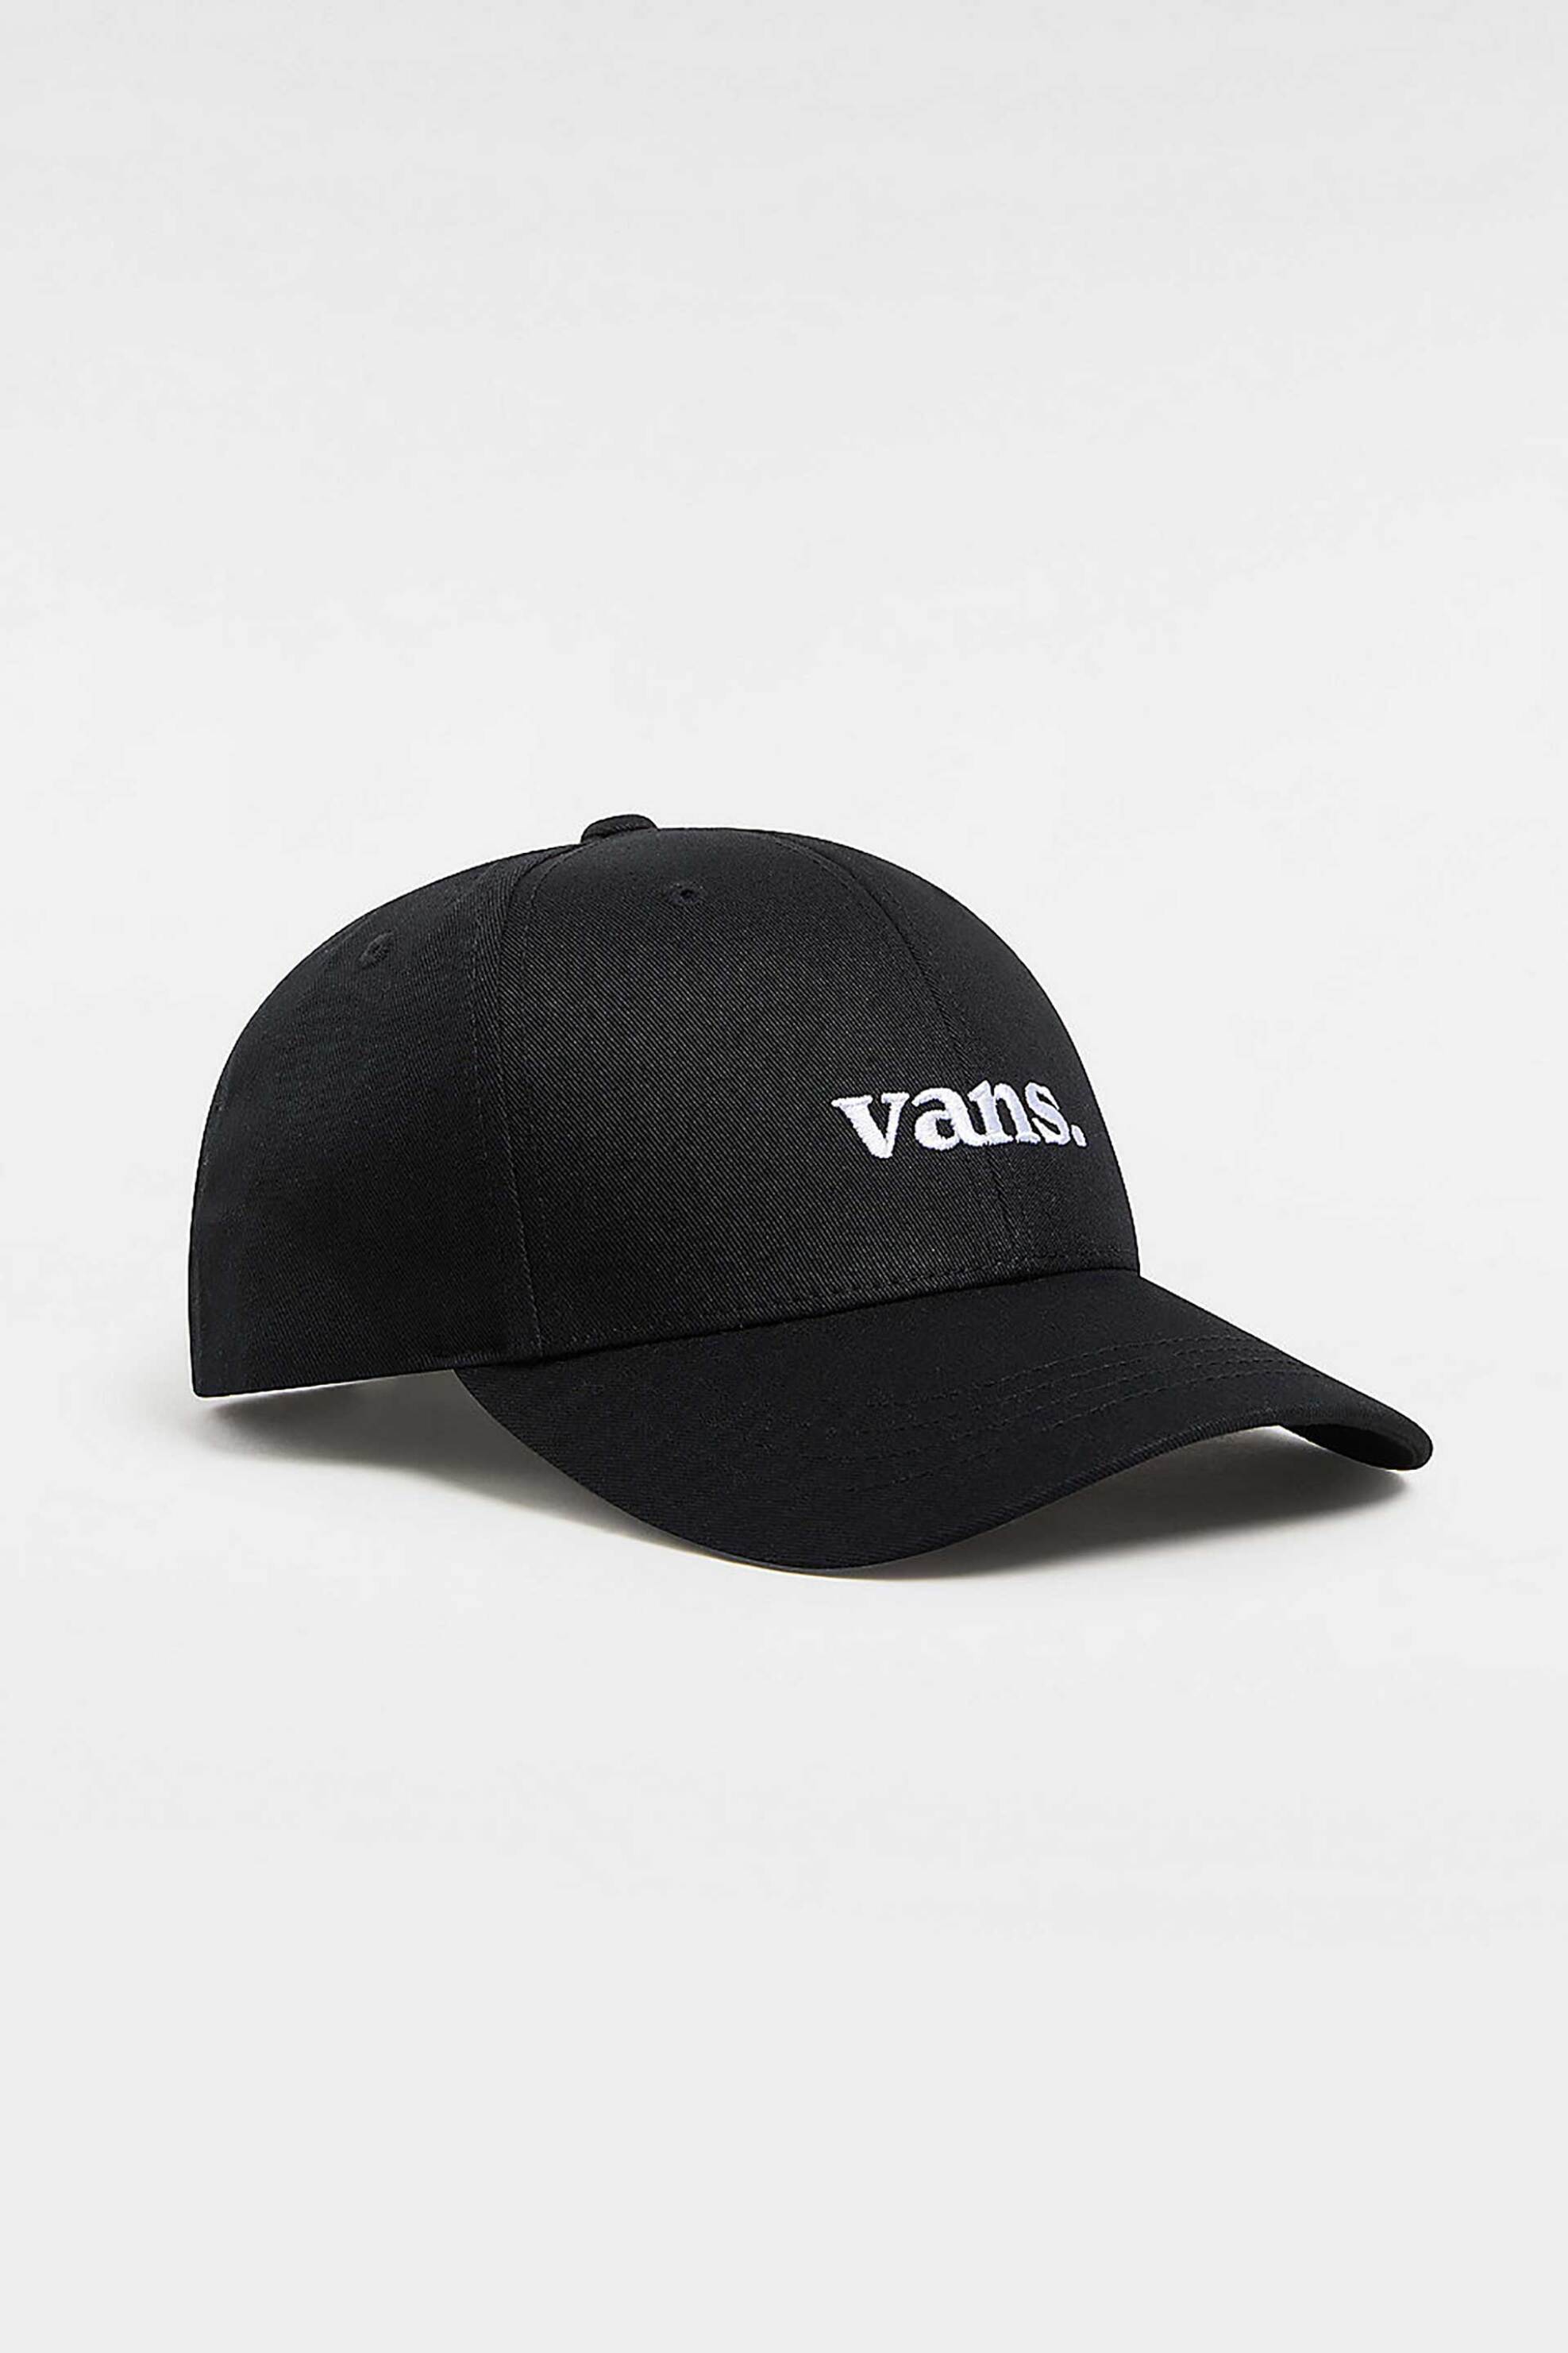 Ανδρική Μόδα > Ανδρικά Αξεσουάρ > Ανδρικά Καπέλα & Σκούφοι Vans ανδρικό καπέλο jockey βαμβακερό με κεντημένο λογότυπο "66 Structured" - VN0008P6BLK1 Μαύρο